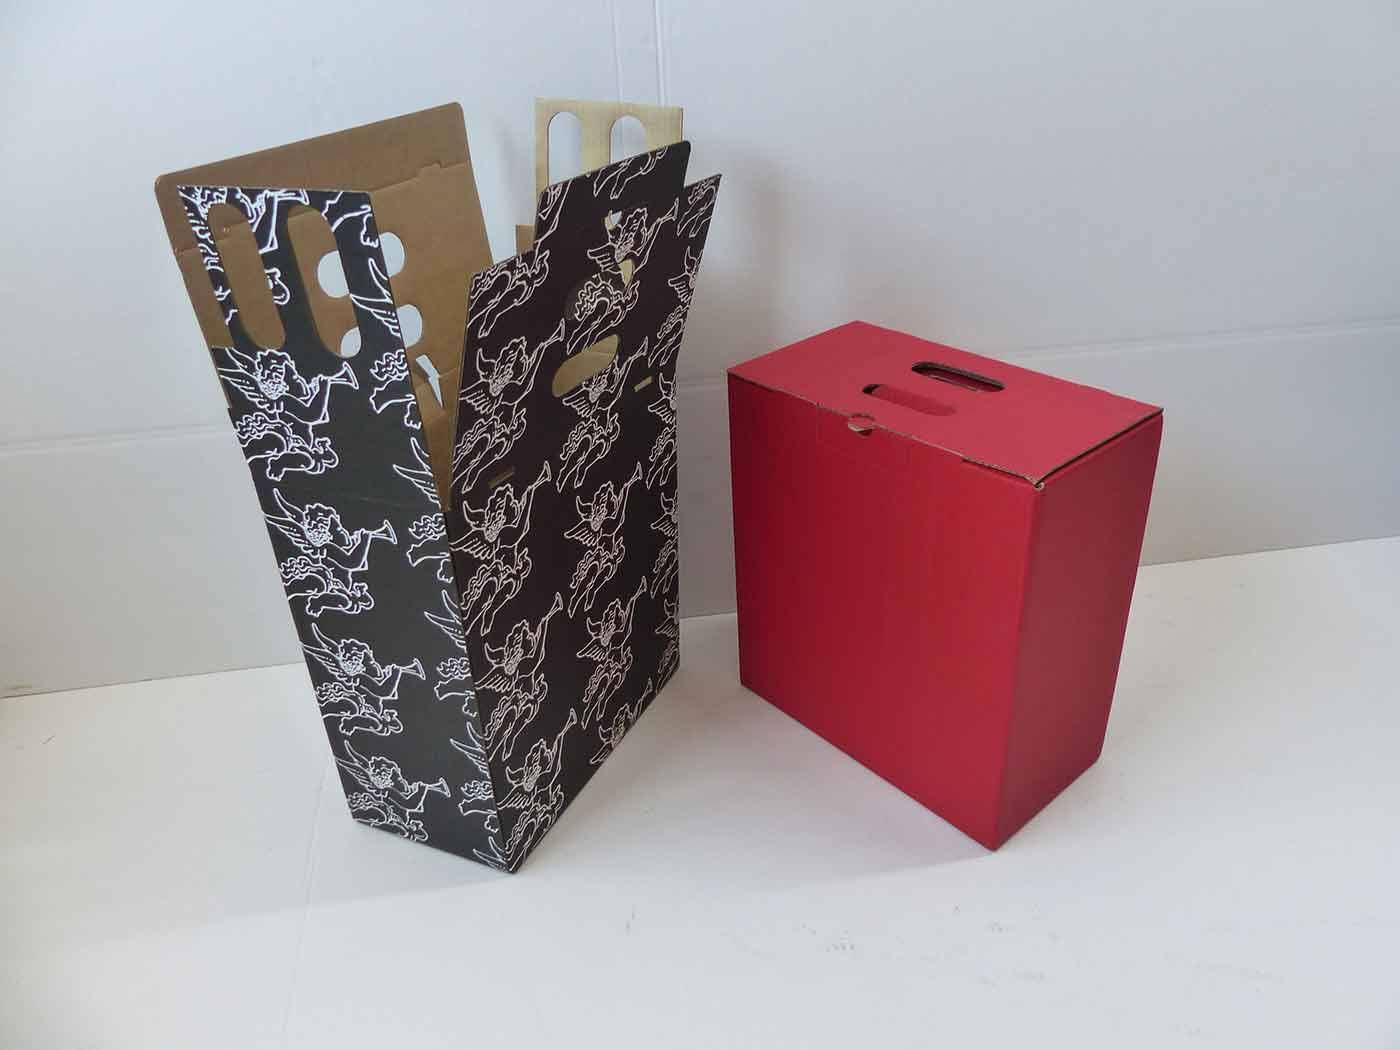 capacidad Lamer depositar Cajas de cartón para envío de botellas de vino | ©FxSanmartí